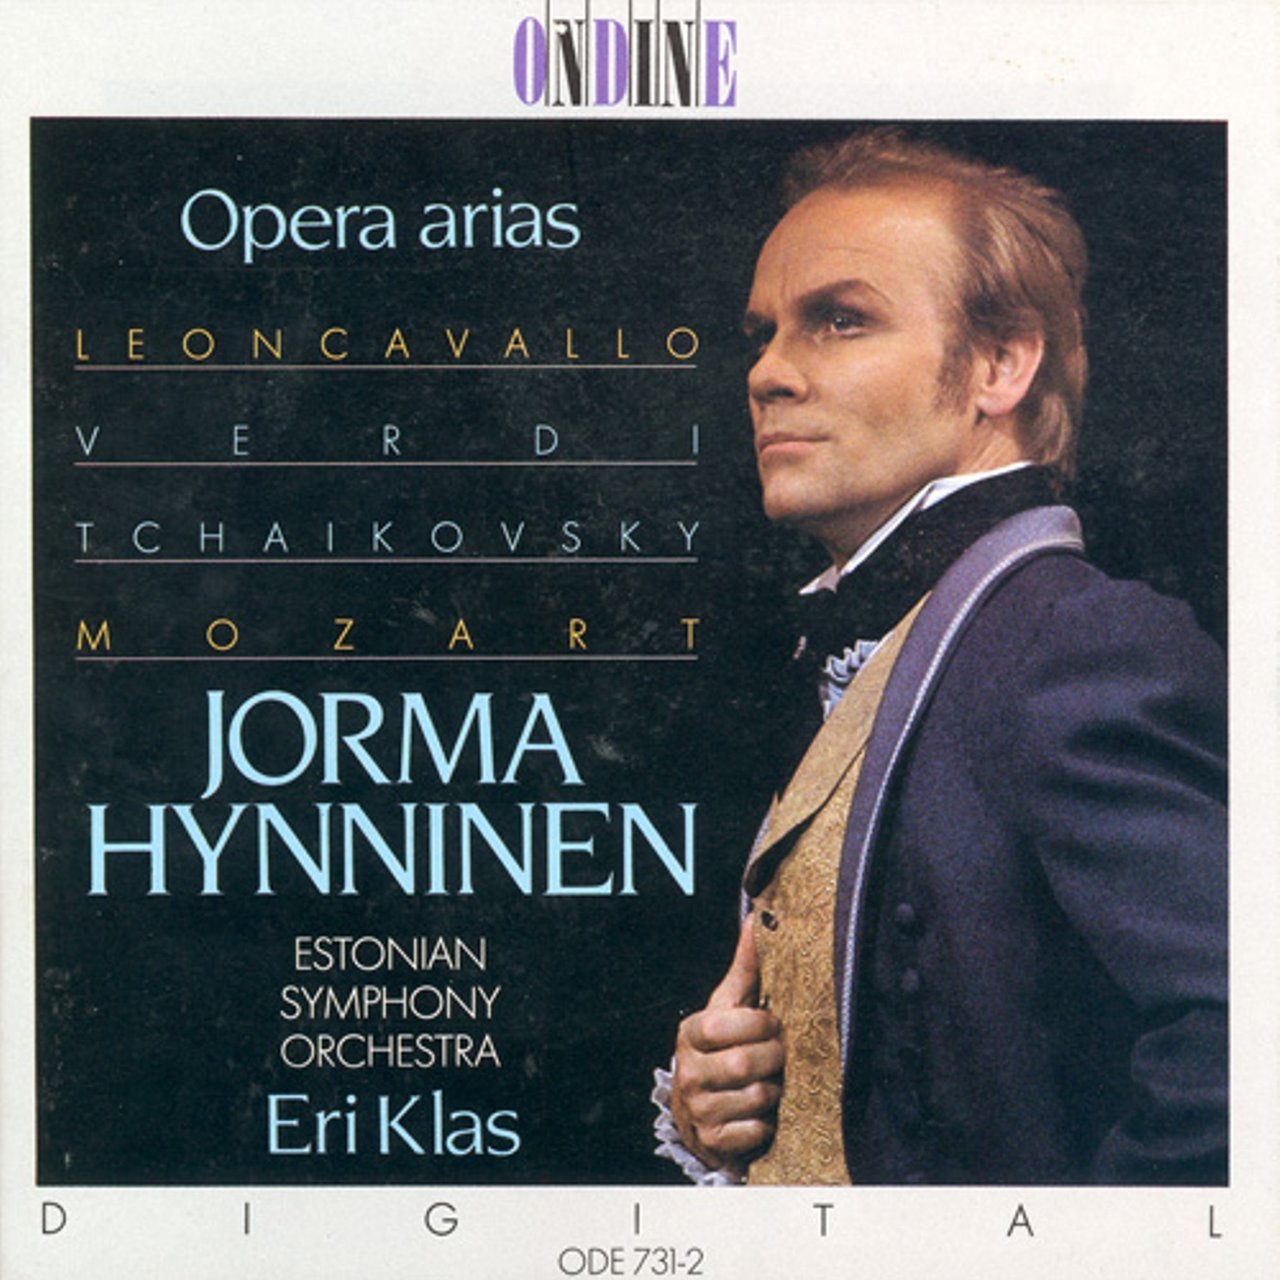 Jorma Hynninen (2010-04- – 1941-text-47). Operatic baritones